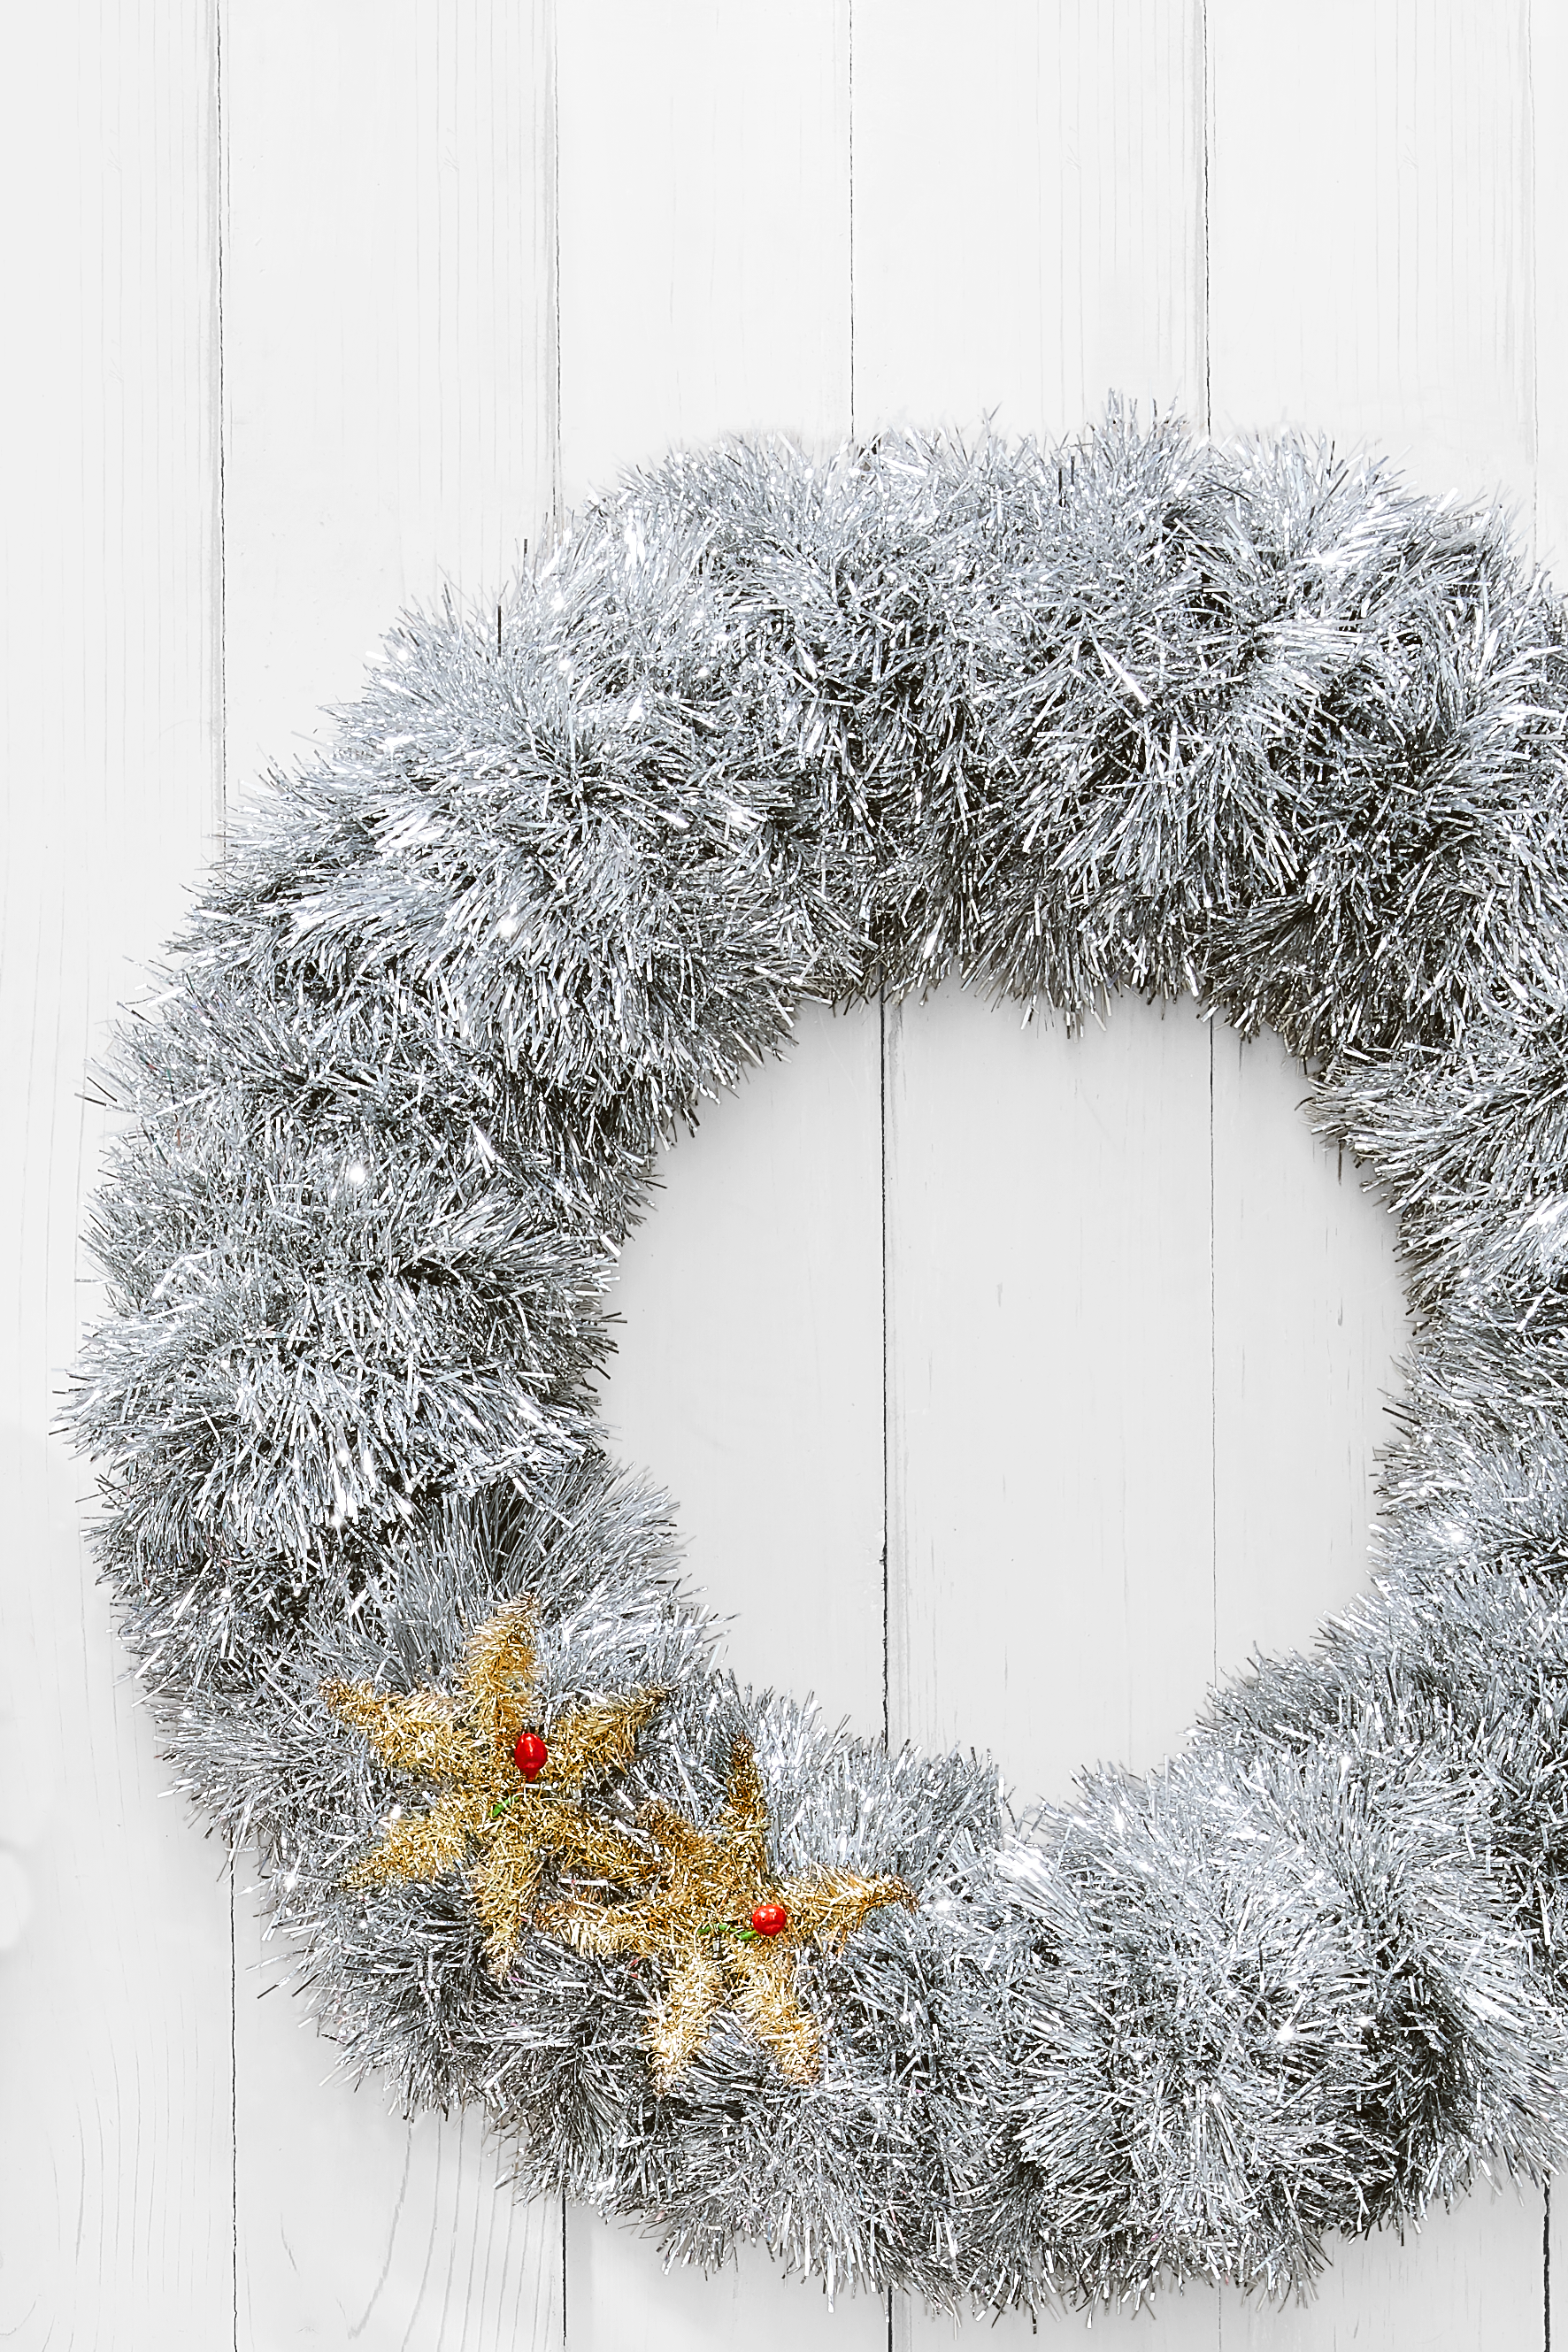 diy christmas wreath